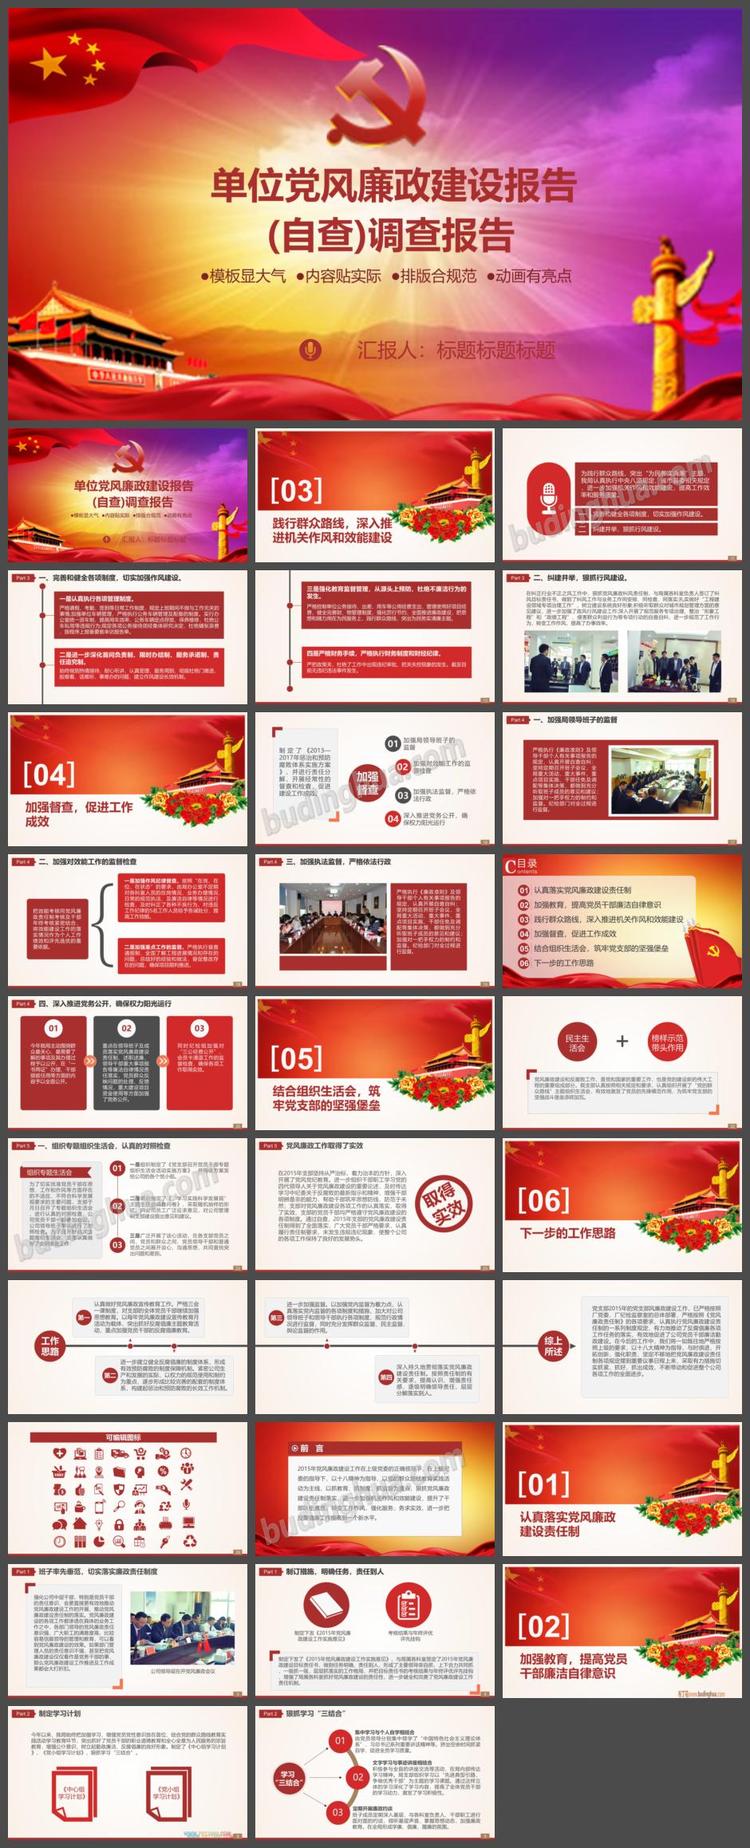 简约华丽中国梦社会主义核心价值观PPT模板免费下载